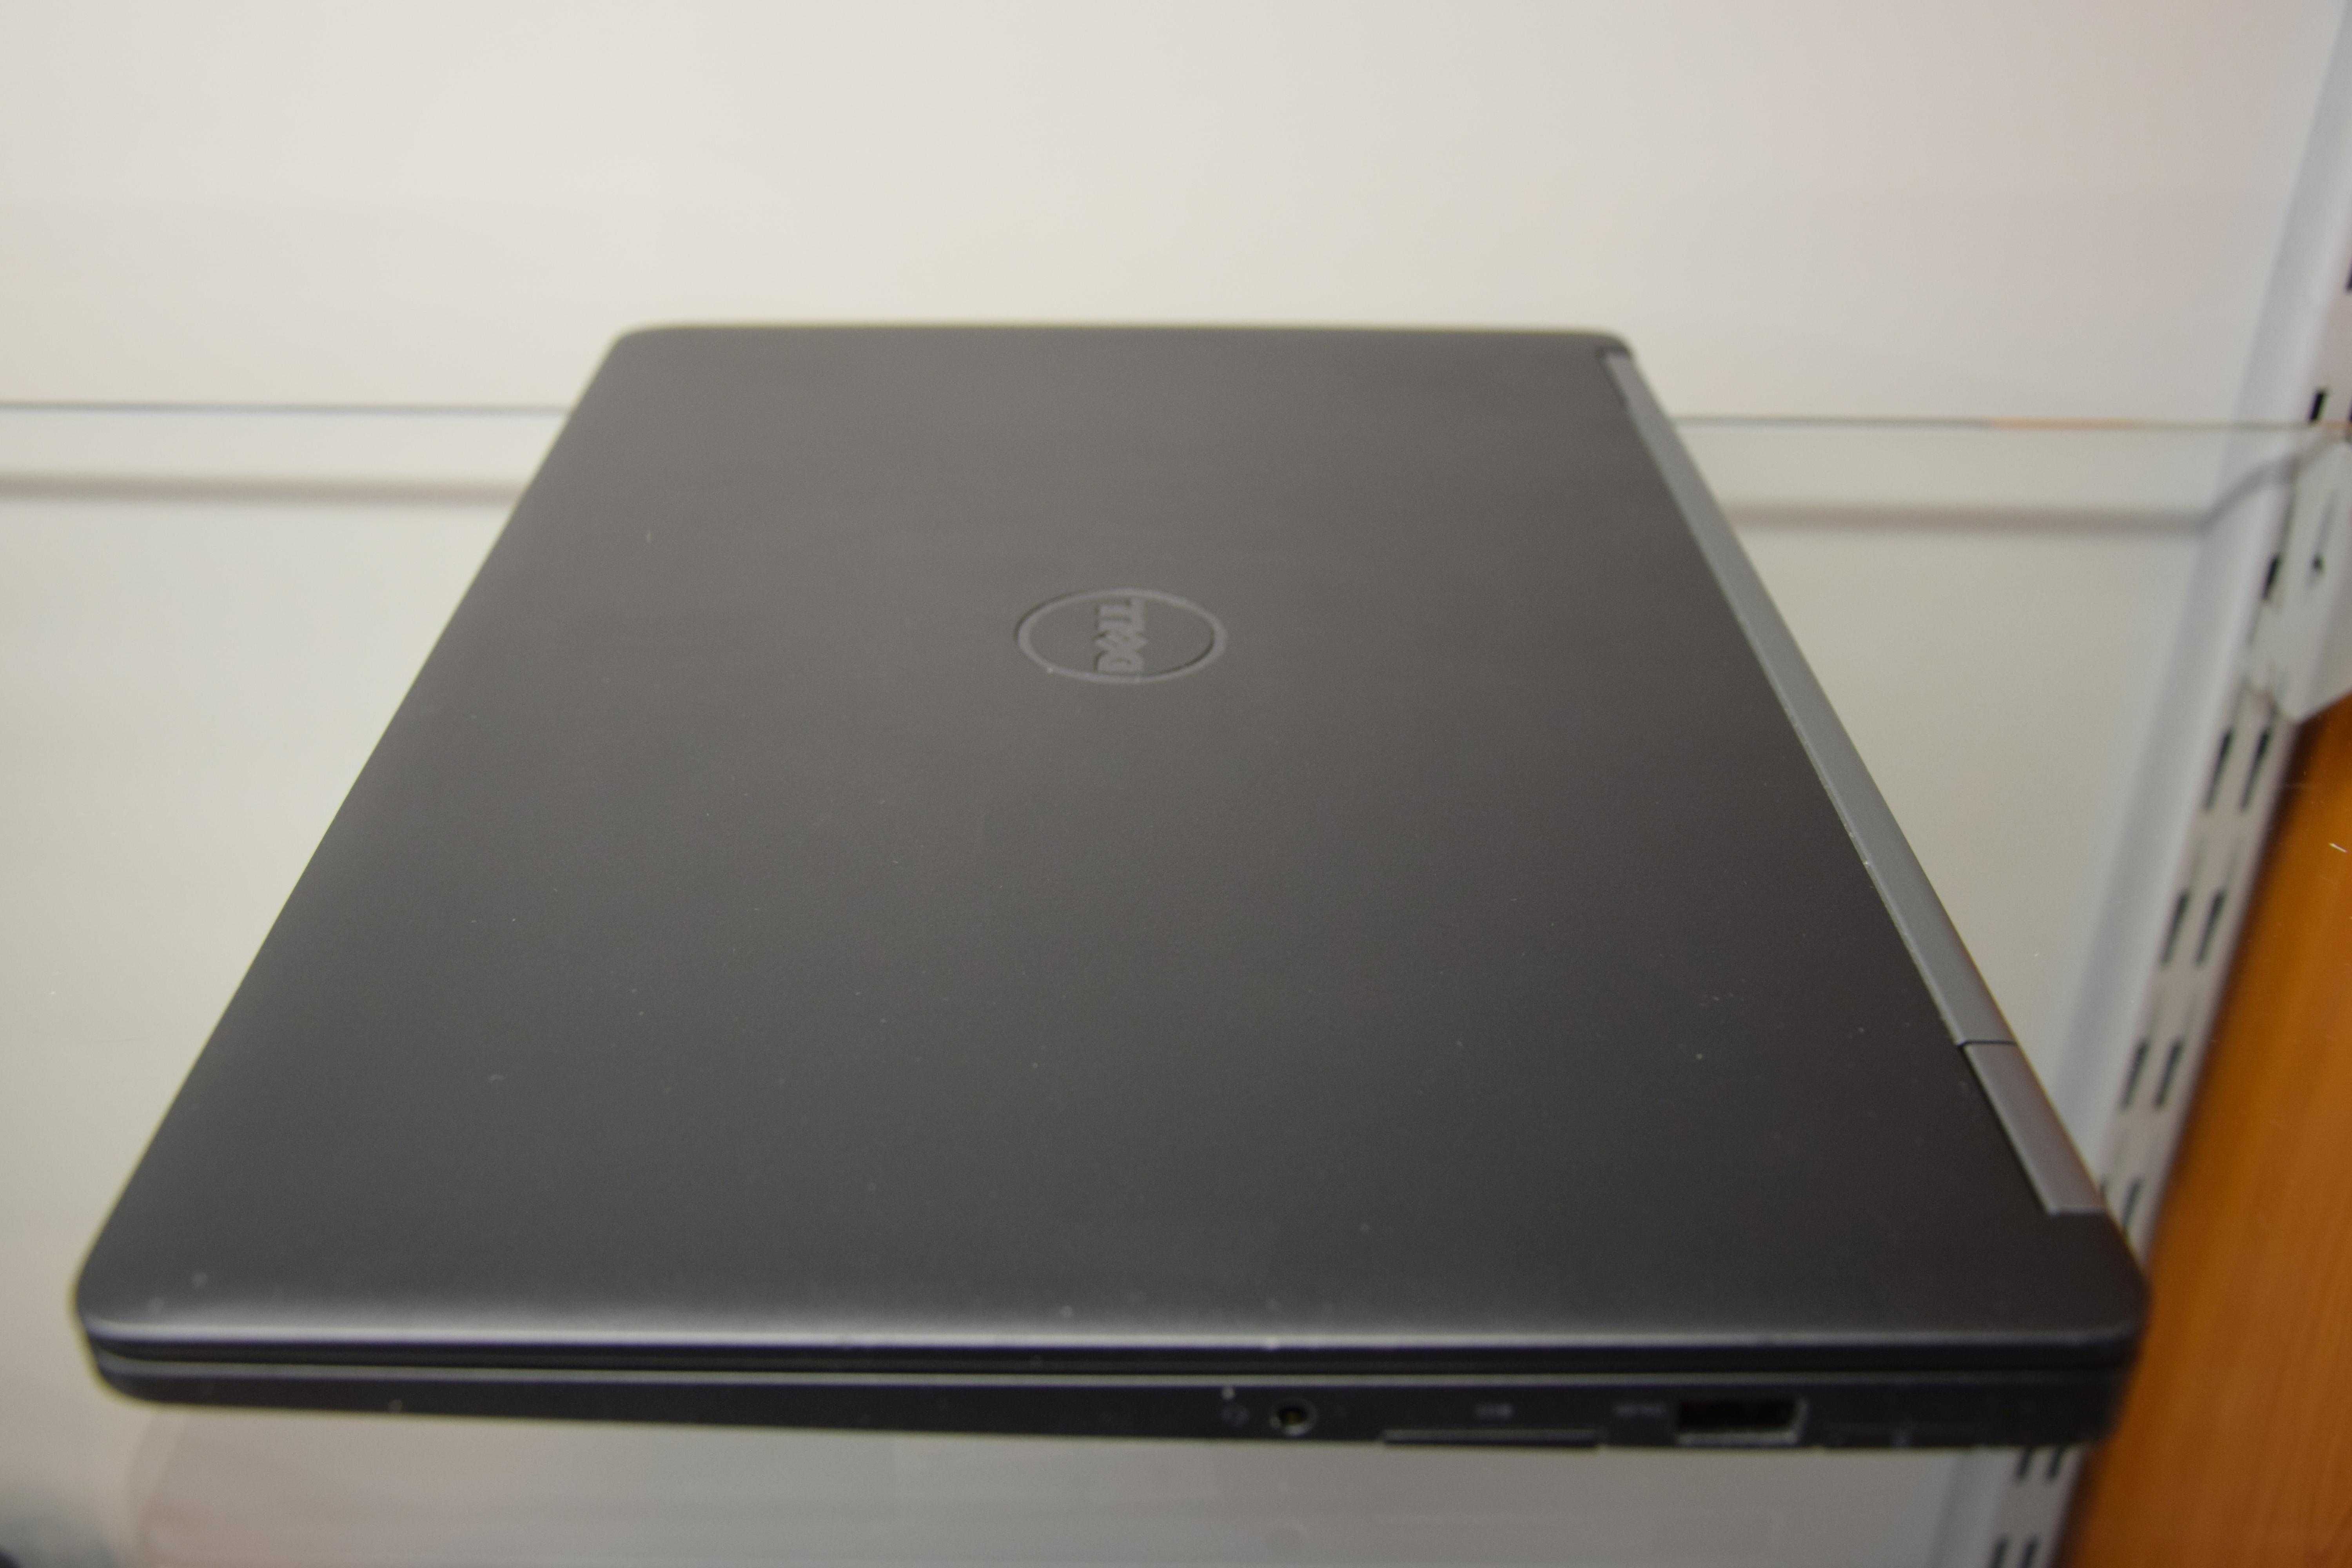 Ultrabook Dell Latitude E7470 I5-6gen 8GB RAM 256SSD W10- LapCenter.pl